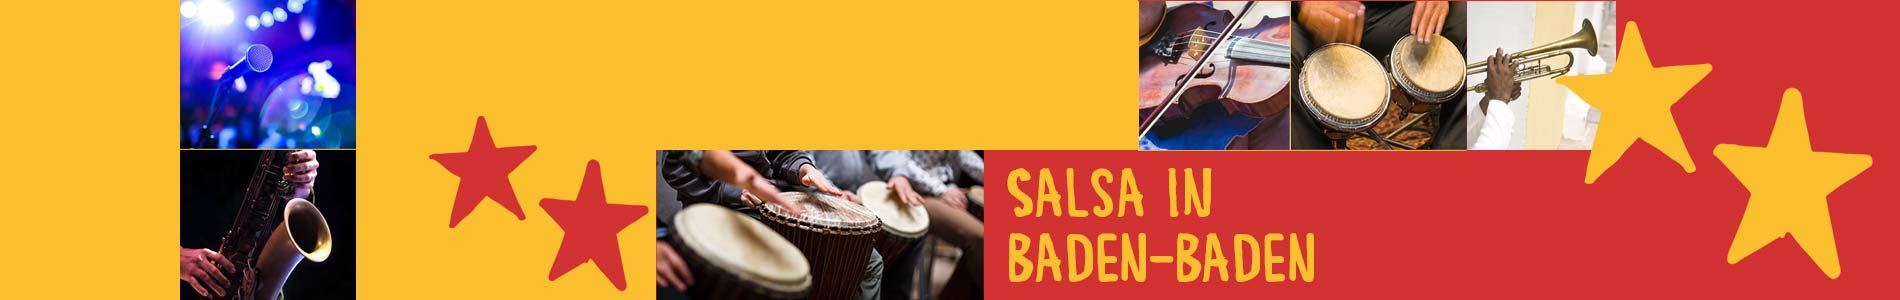 Salsa in Baden-Baden – Salsa lernen und tanzen, Tanzkurse, Partys, Veranstaltungen